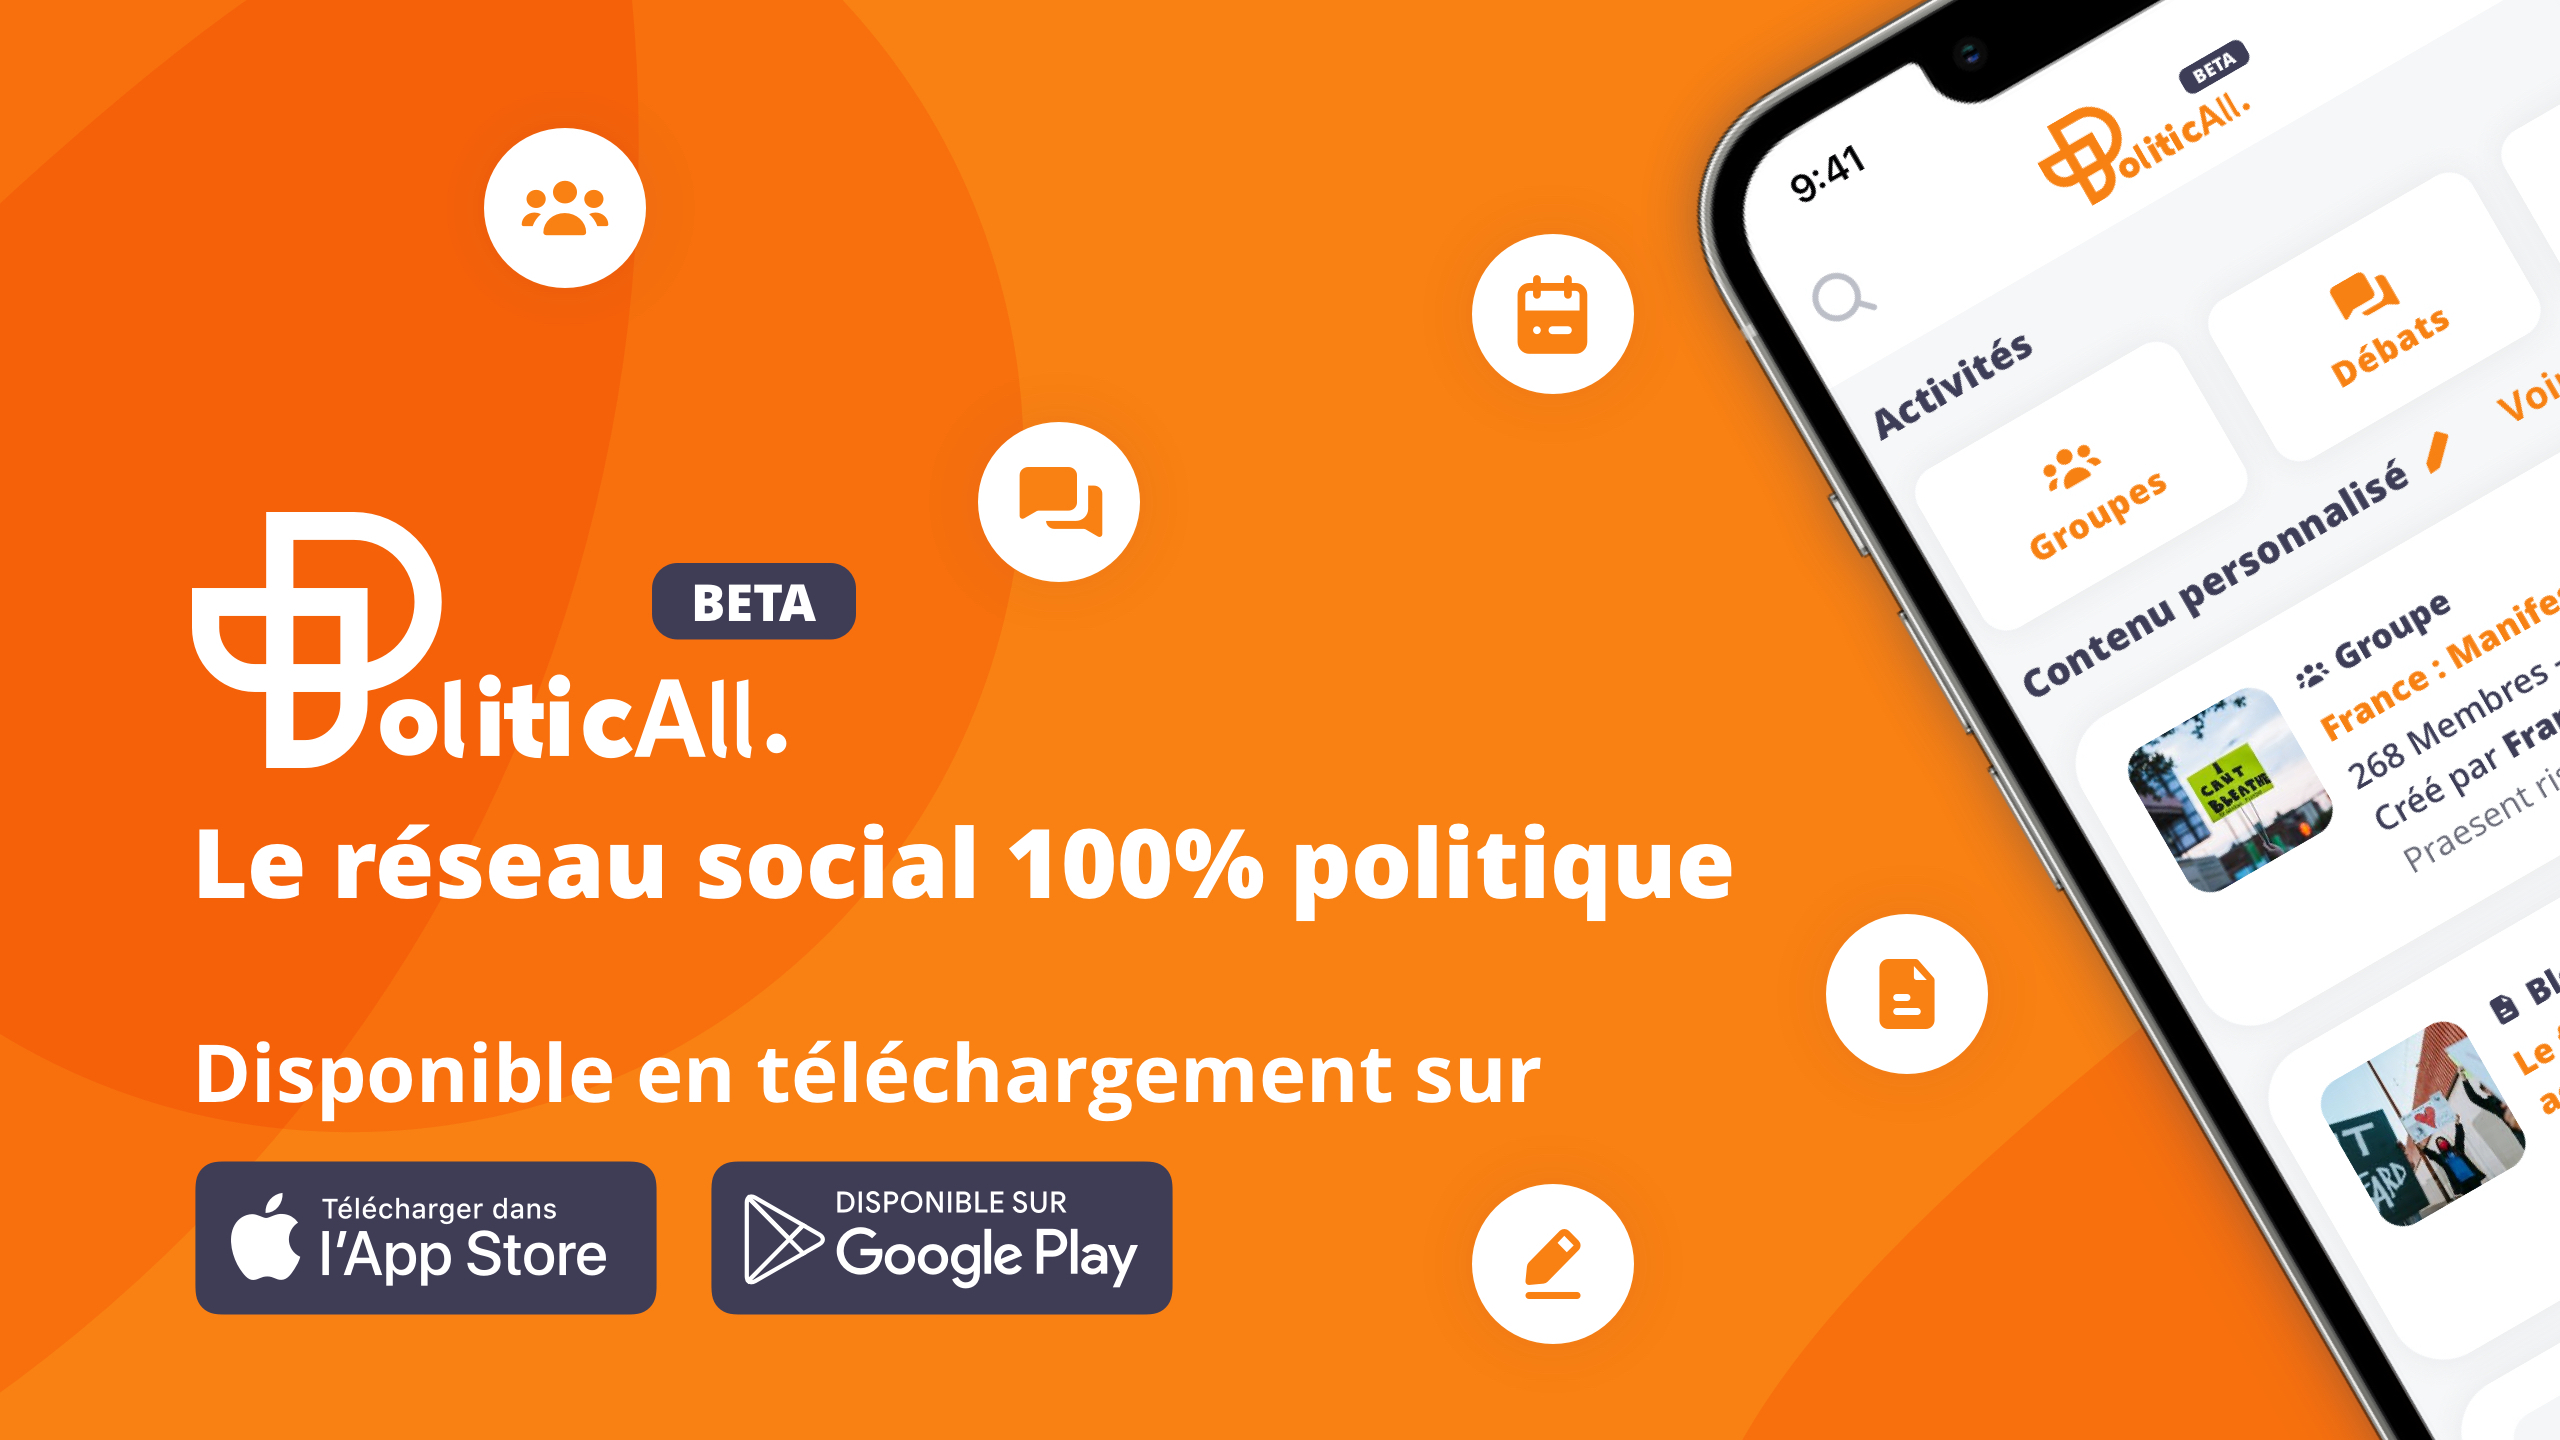 Application politicall reseau social politique telechargement